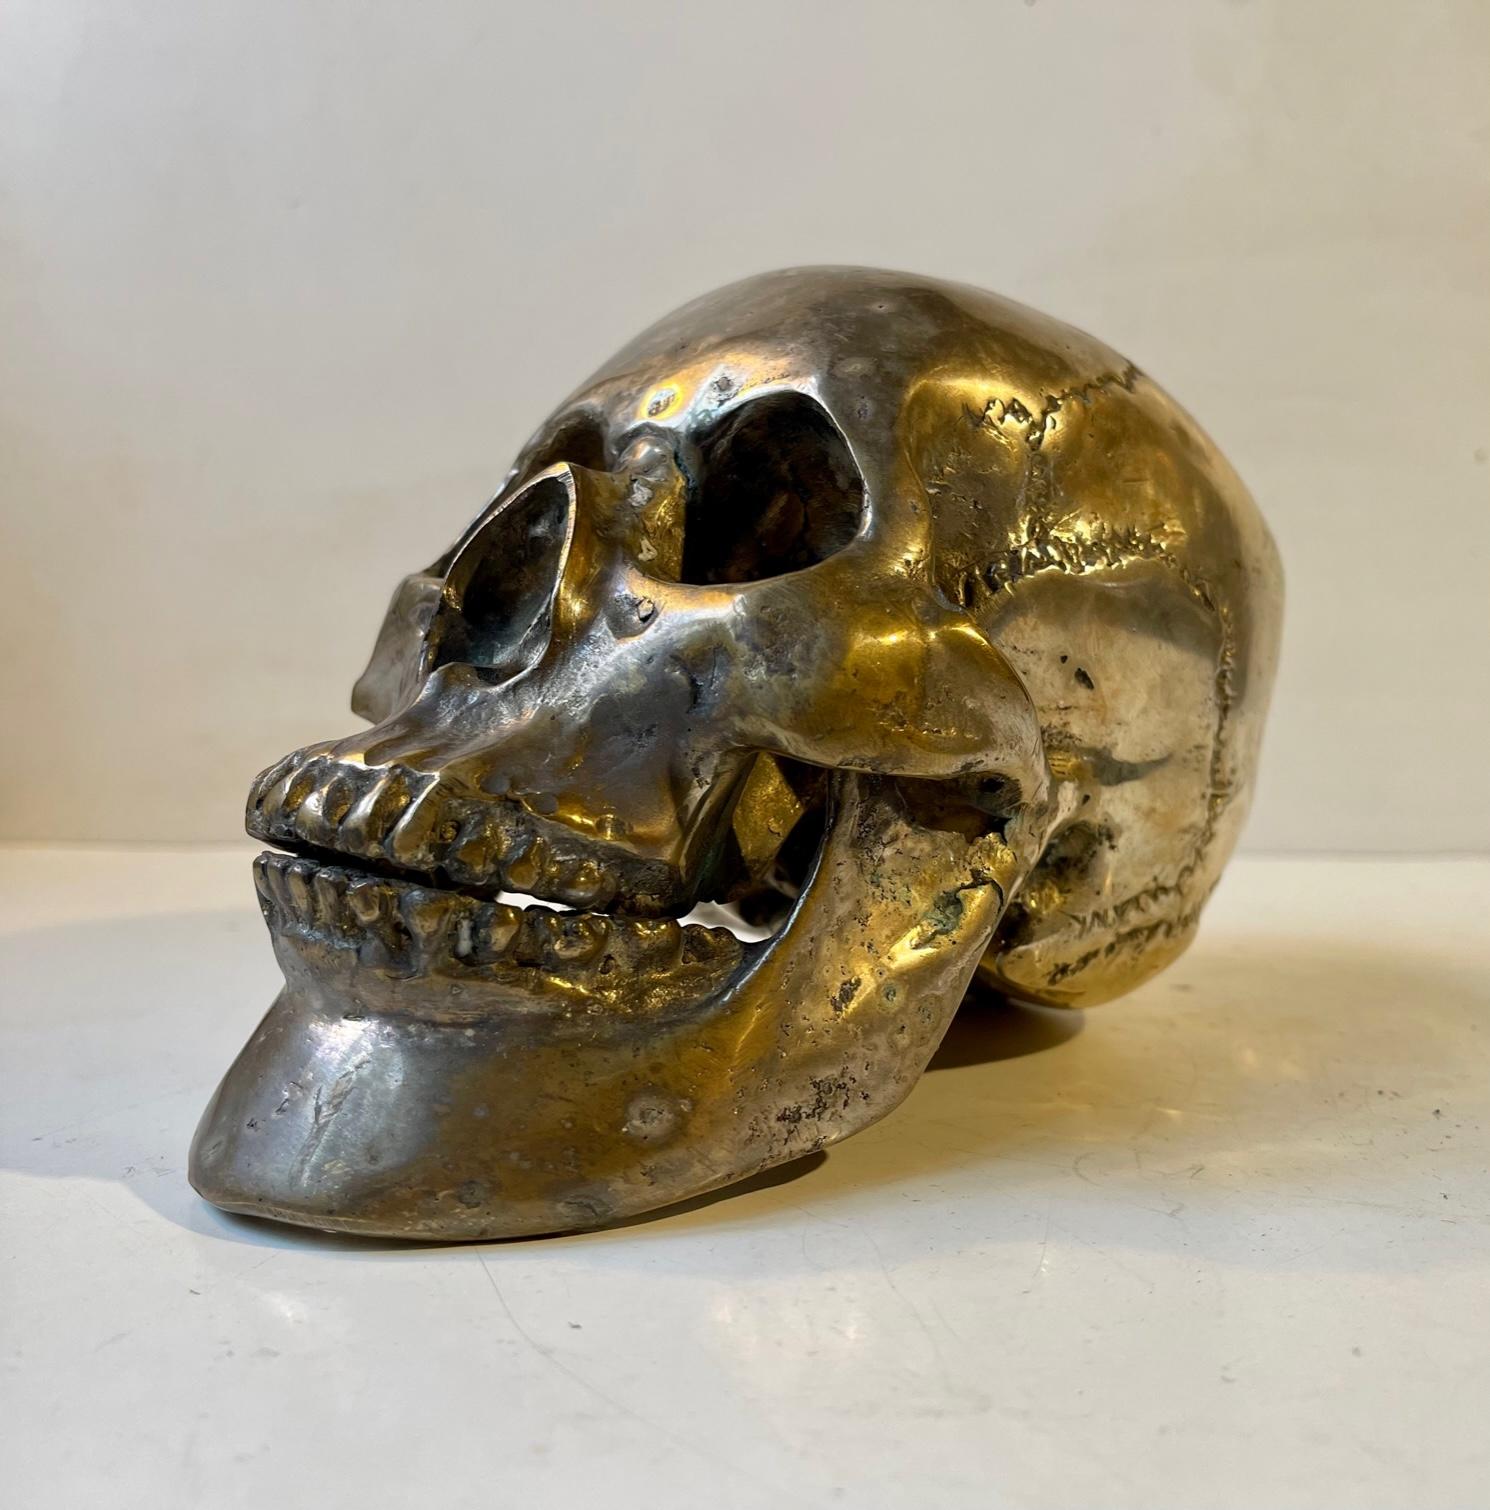 Ein 1:1 Gussmodell eines menschlichen Schädels aus versilberter Bronze. Er wurde nach einem Abguss eines echten menschlichen Schädels, wahrscheinlich einer Frau, hergestellt und ist komplett mit Zähnen, Unter- und Oberkiefer. Dieses Exemplar zeigt